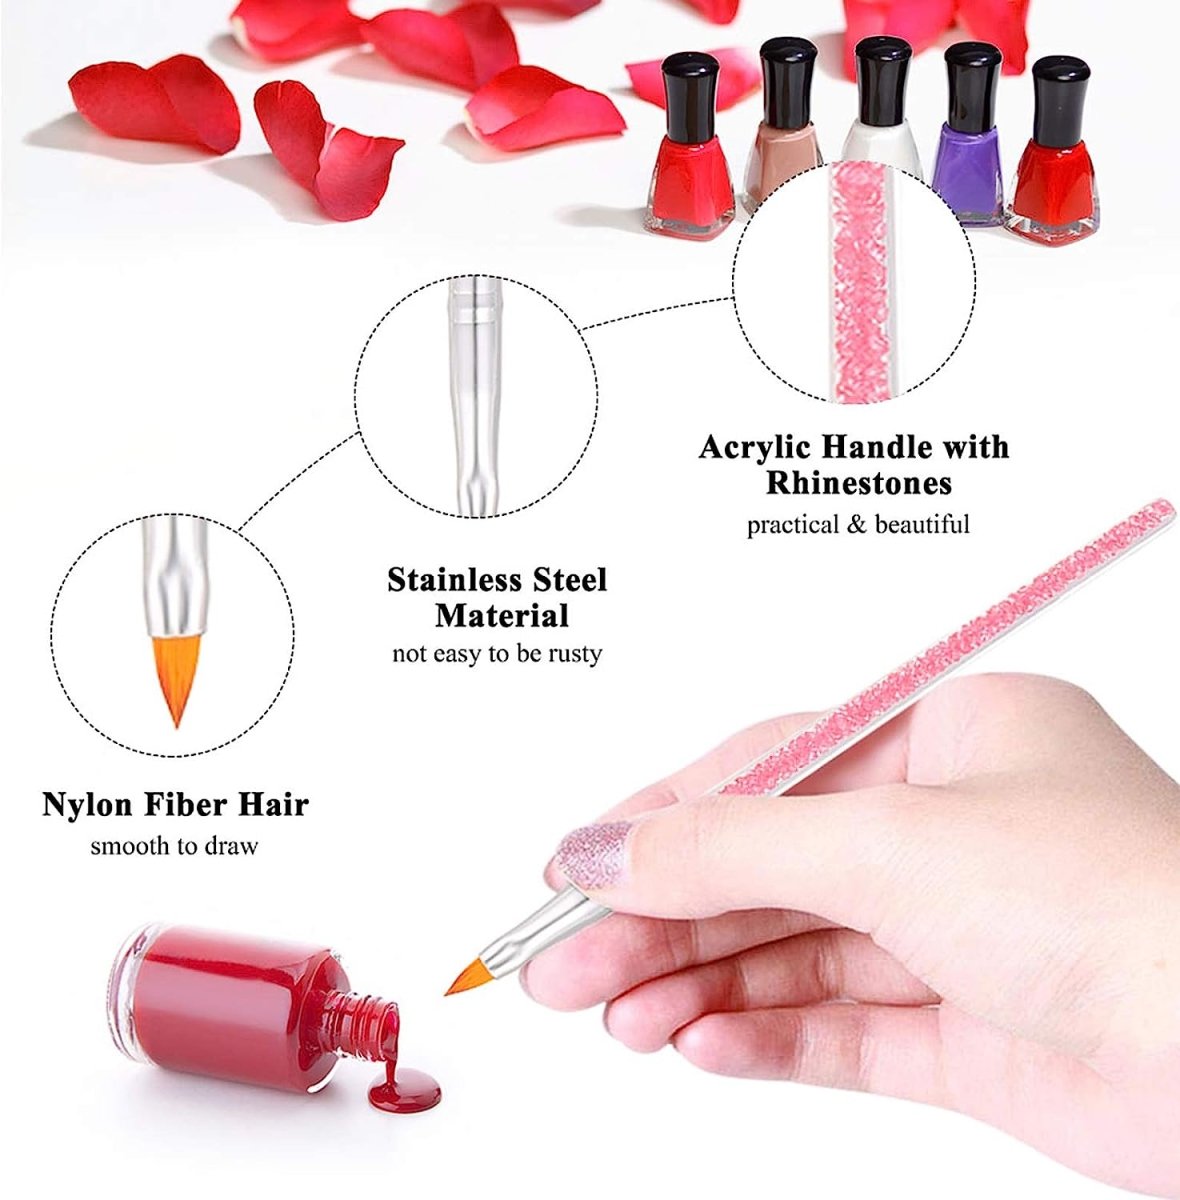 10pcs Acrylic Nail Brushes Professional Set With Rhinestone Handle Nail Brushes- #Royalkart#acrylic nail brushes